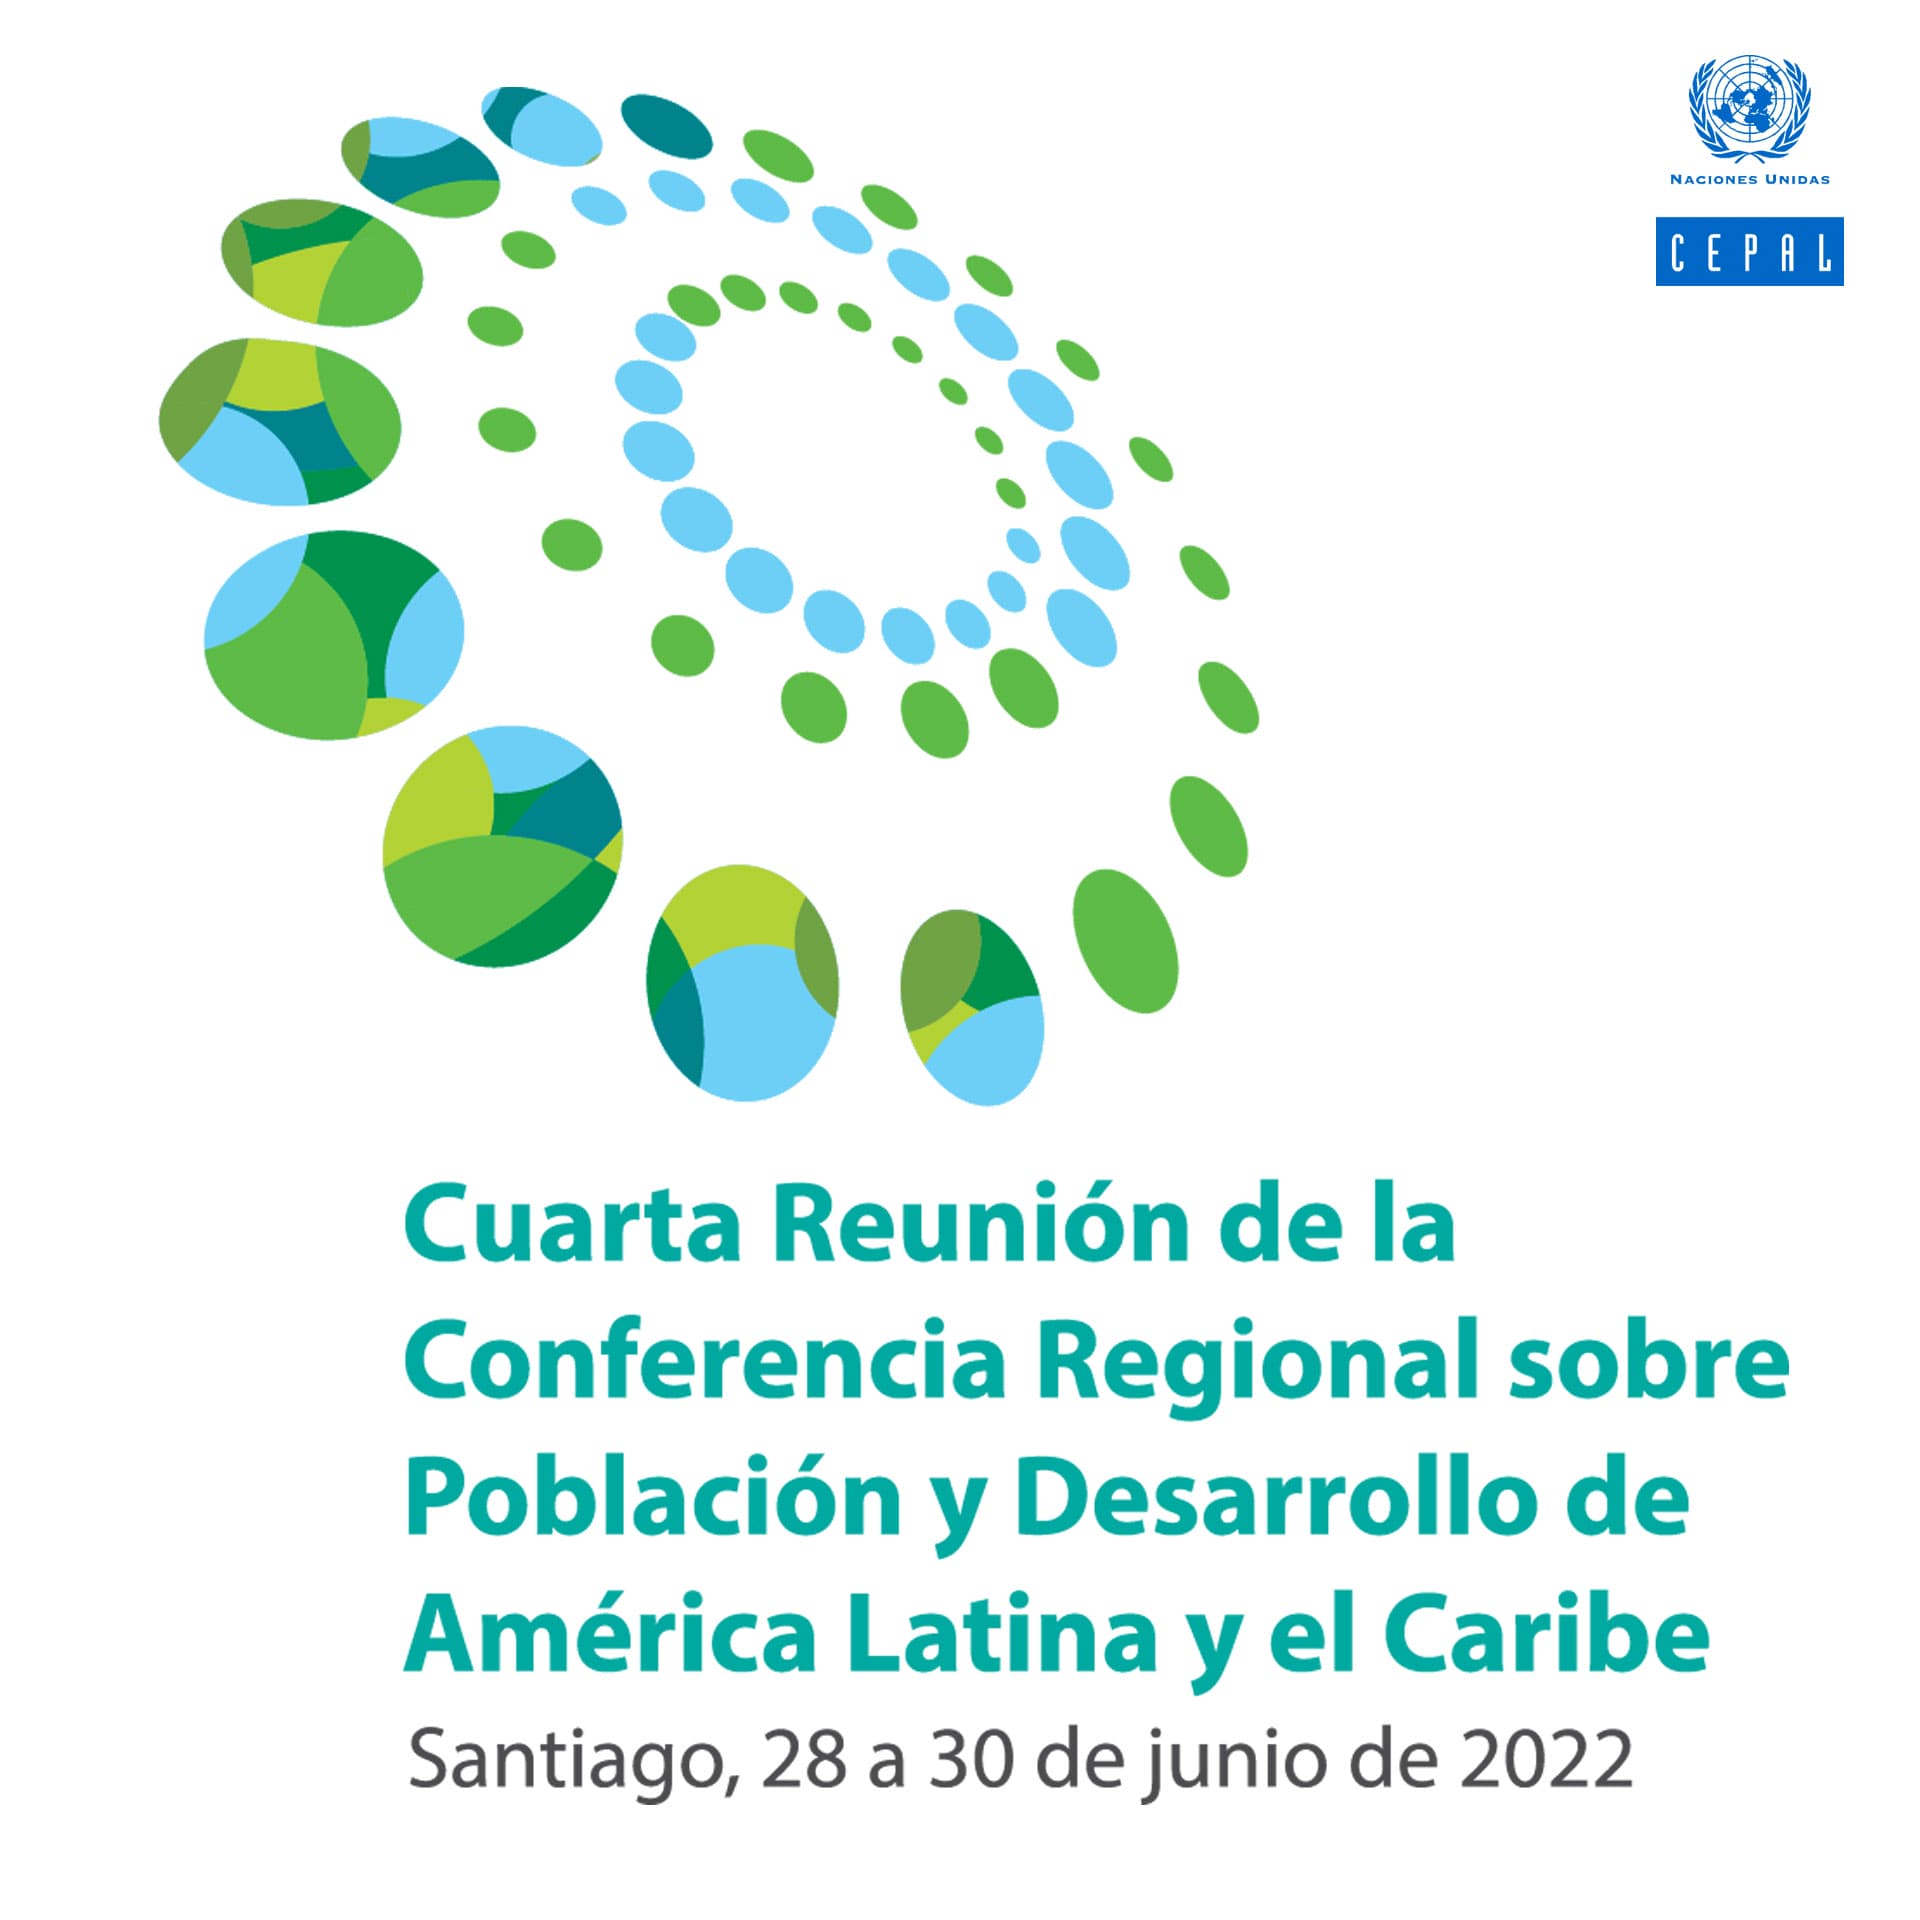 Foro de sociedad Civil Afrodescendiente en el marco de la Cuarta Conferencia Regional sobre la Población y el Desarrollo a realizarse del 28 al 30 de junio en Santiago de Chile